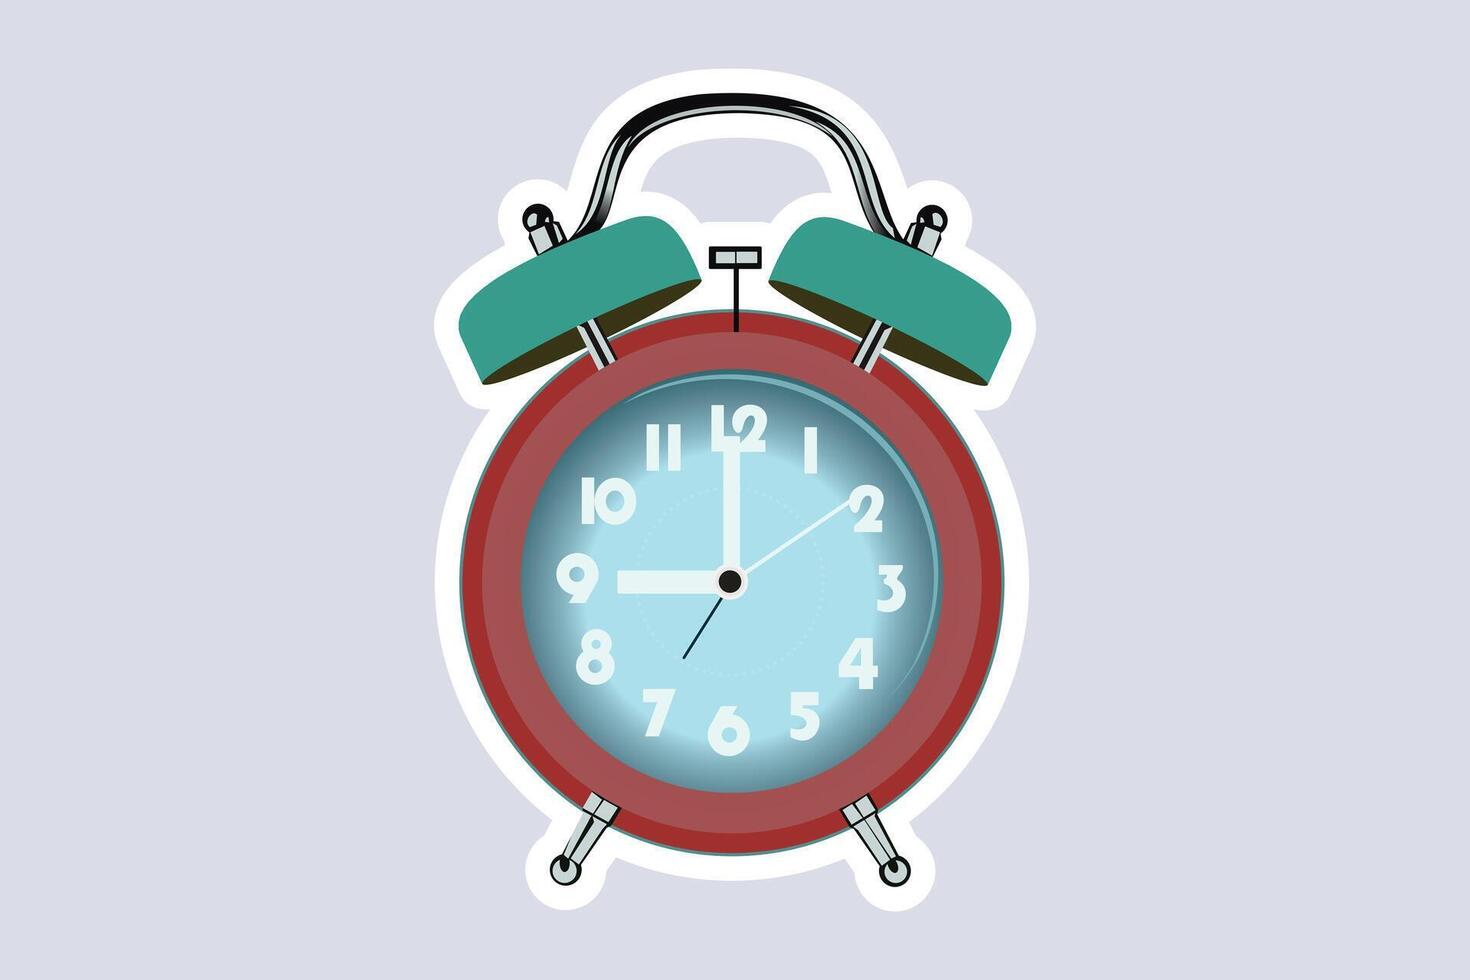 Table Alarm Clock Sticker vector illustration. Home interior object icon concept. Alarm clock for wake-up on time concept. Timmer alarm clock sticker design logo icon.